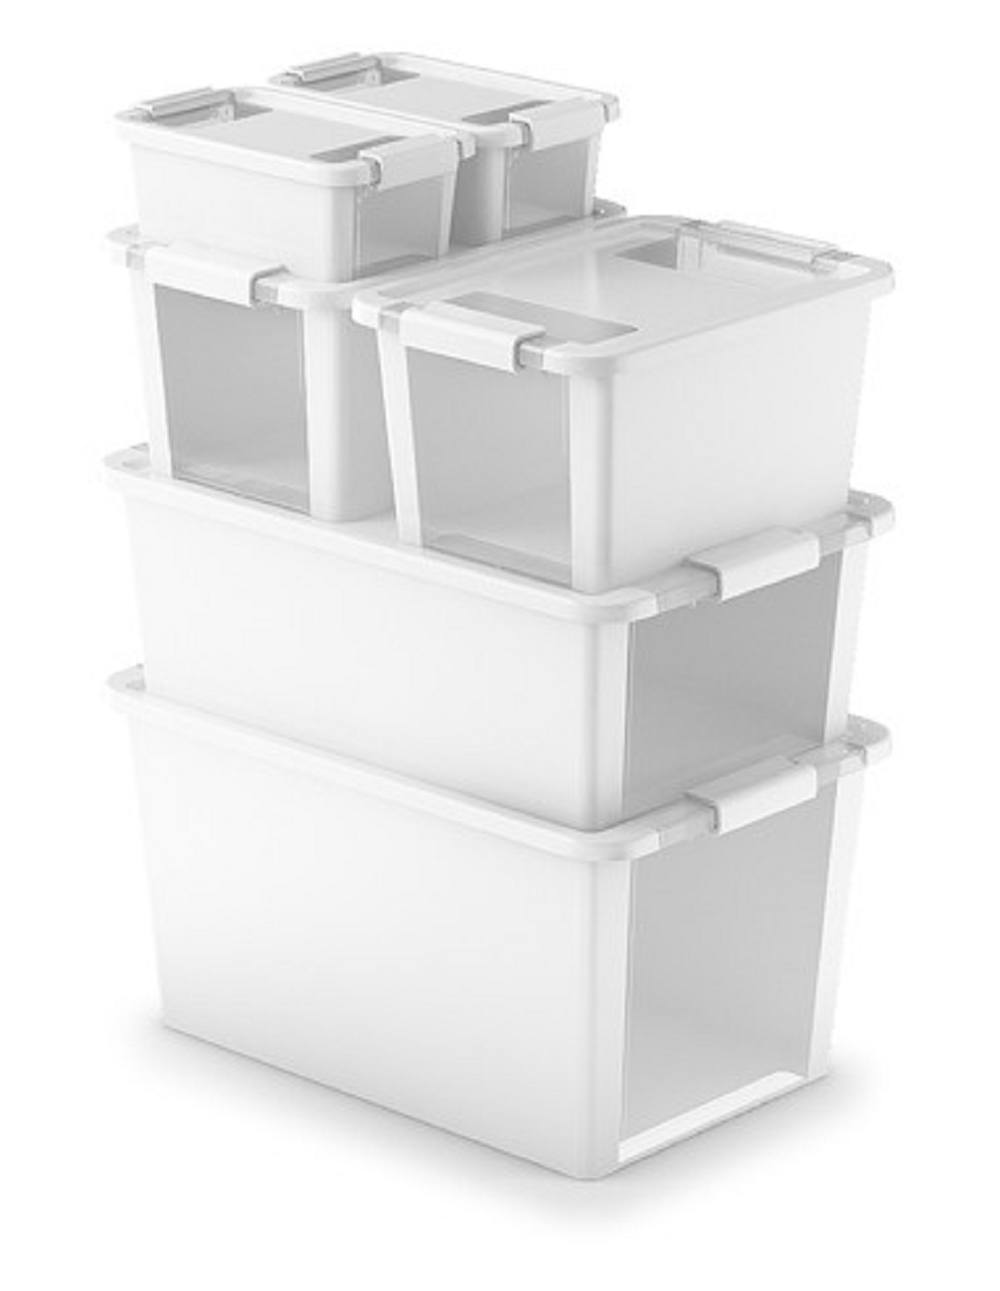 Mehrzweck Aufbewahrungsbehälter STORAGE mit Deckel | HxBxT 10x26,5x16cm | 3 Liter | Weiß | Behälter, Box, Aufbewahrungsbehälter, Aufbewahrungsbox